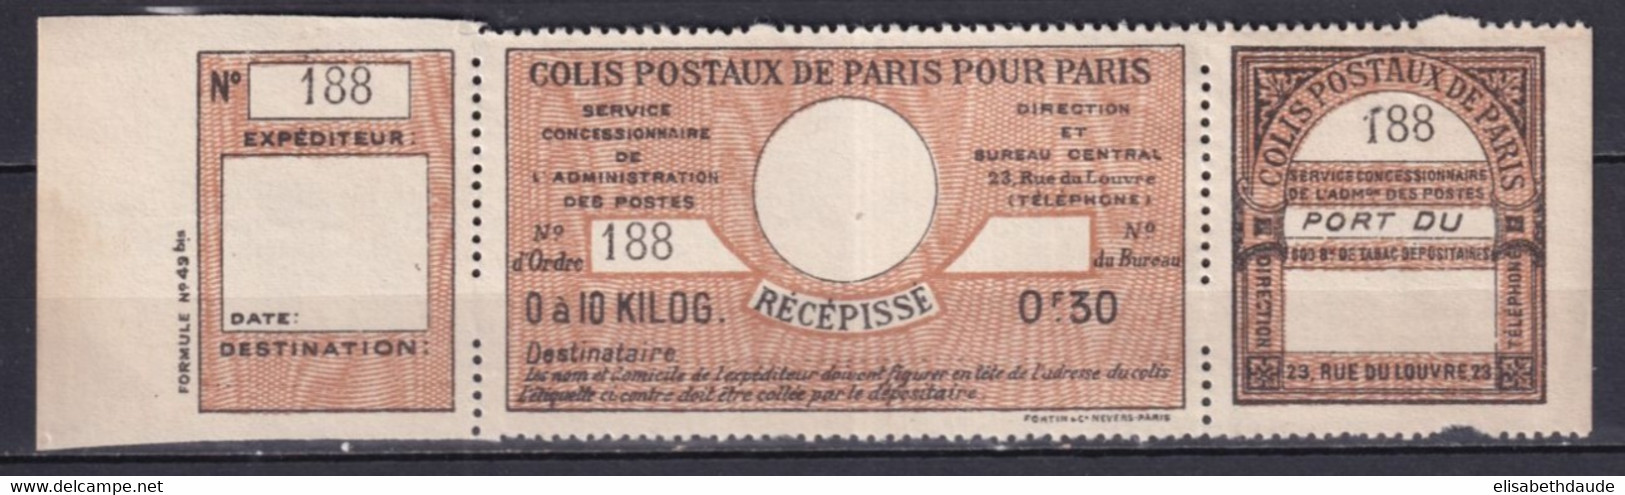 COLIS POSTAUX PARIS POUR PARIS  - 1917 - MAURY N°42 (*) NSG RARE COMPLET ! - COTE 2009 = 150 EUR. - Mint/Hinged